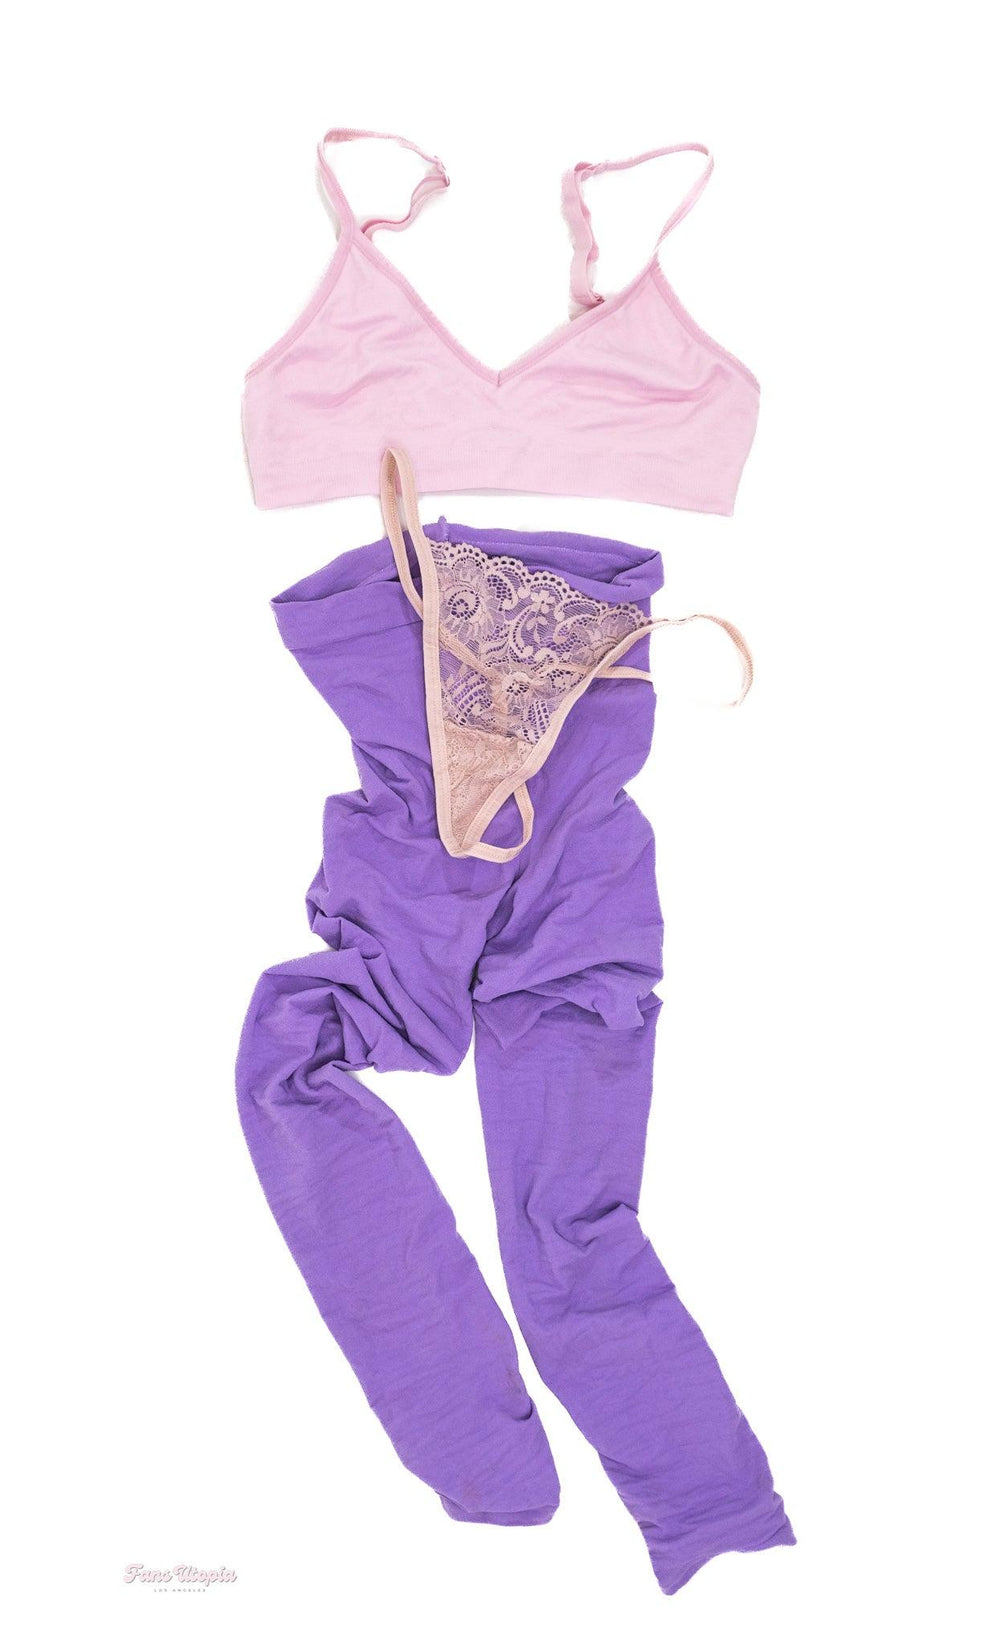 Cherie DeVille Pink Purple Yoga Set + Signed Polaroid - FANS UTOPIA